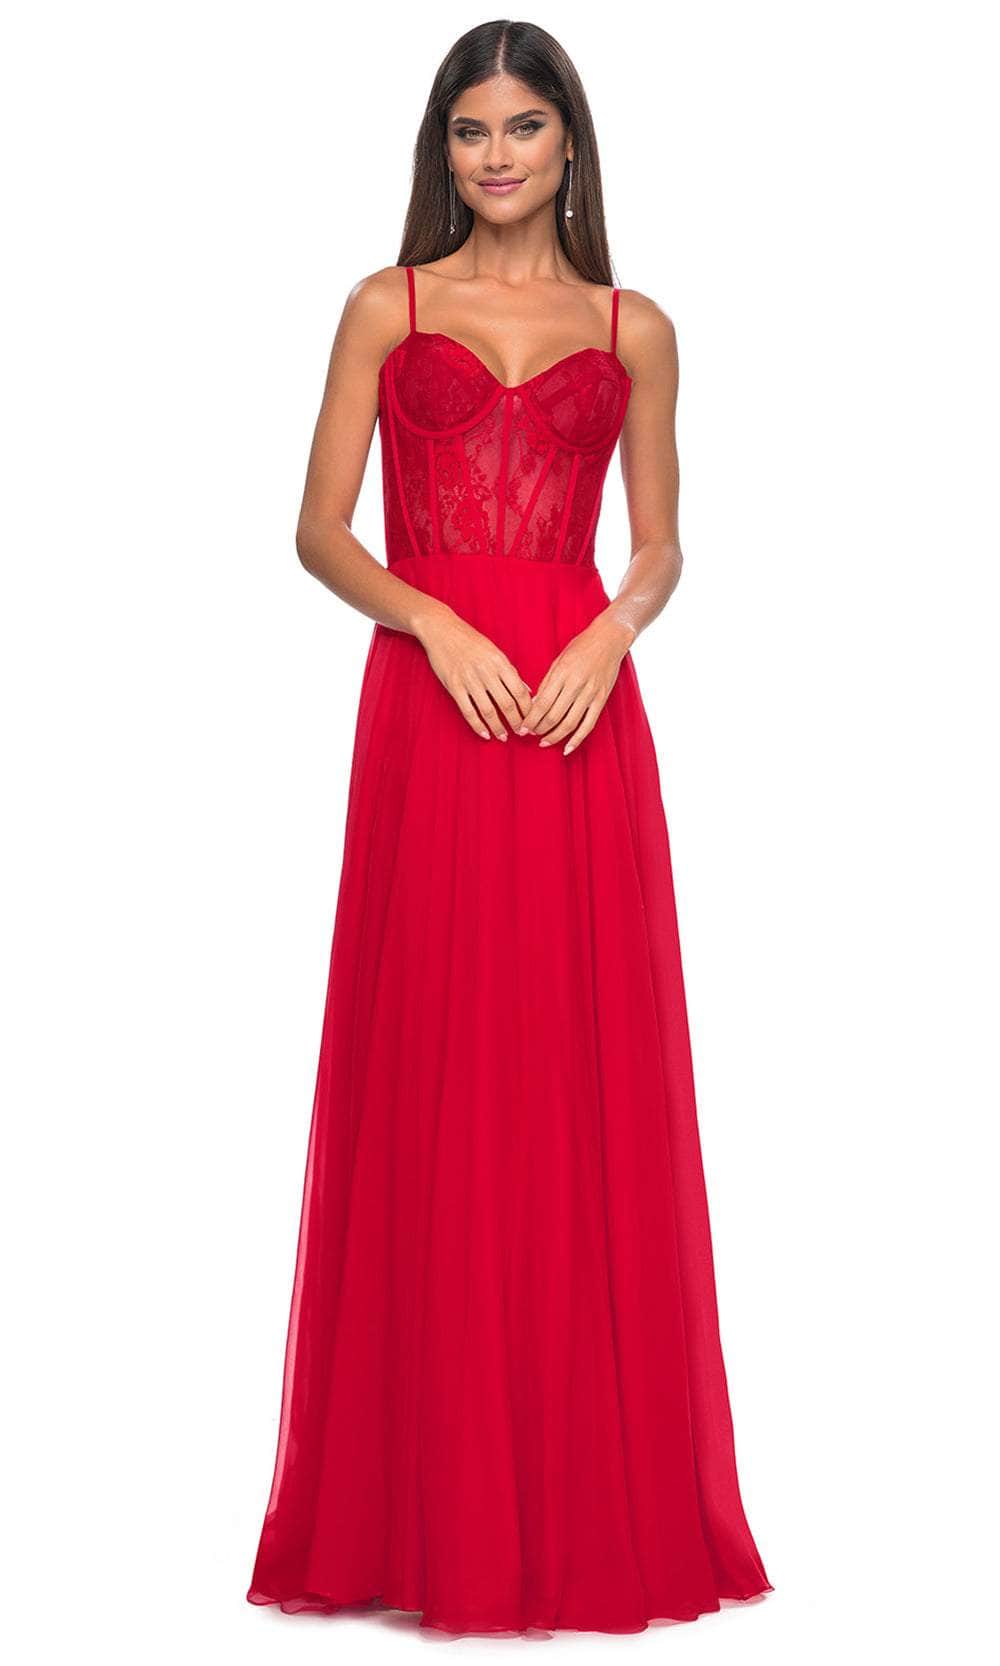 La Femme 32276 - Bustier High Slit Prom Dress Evening Dresses